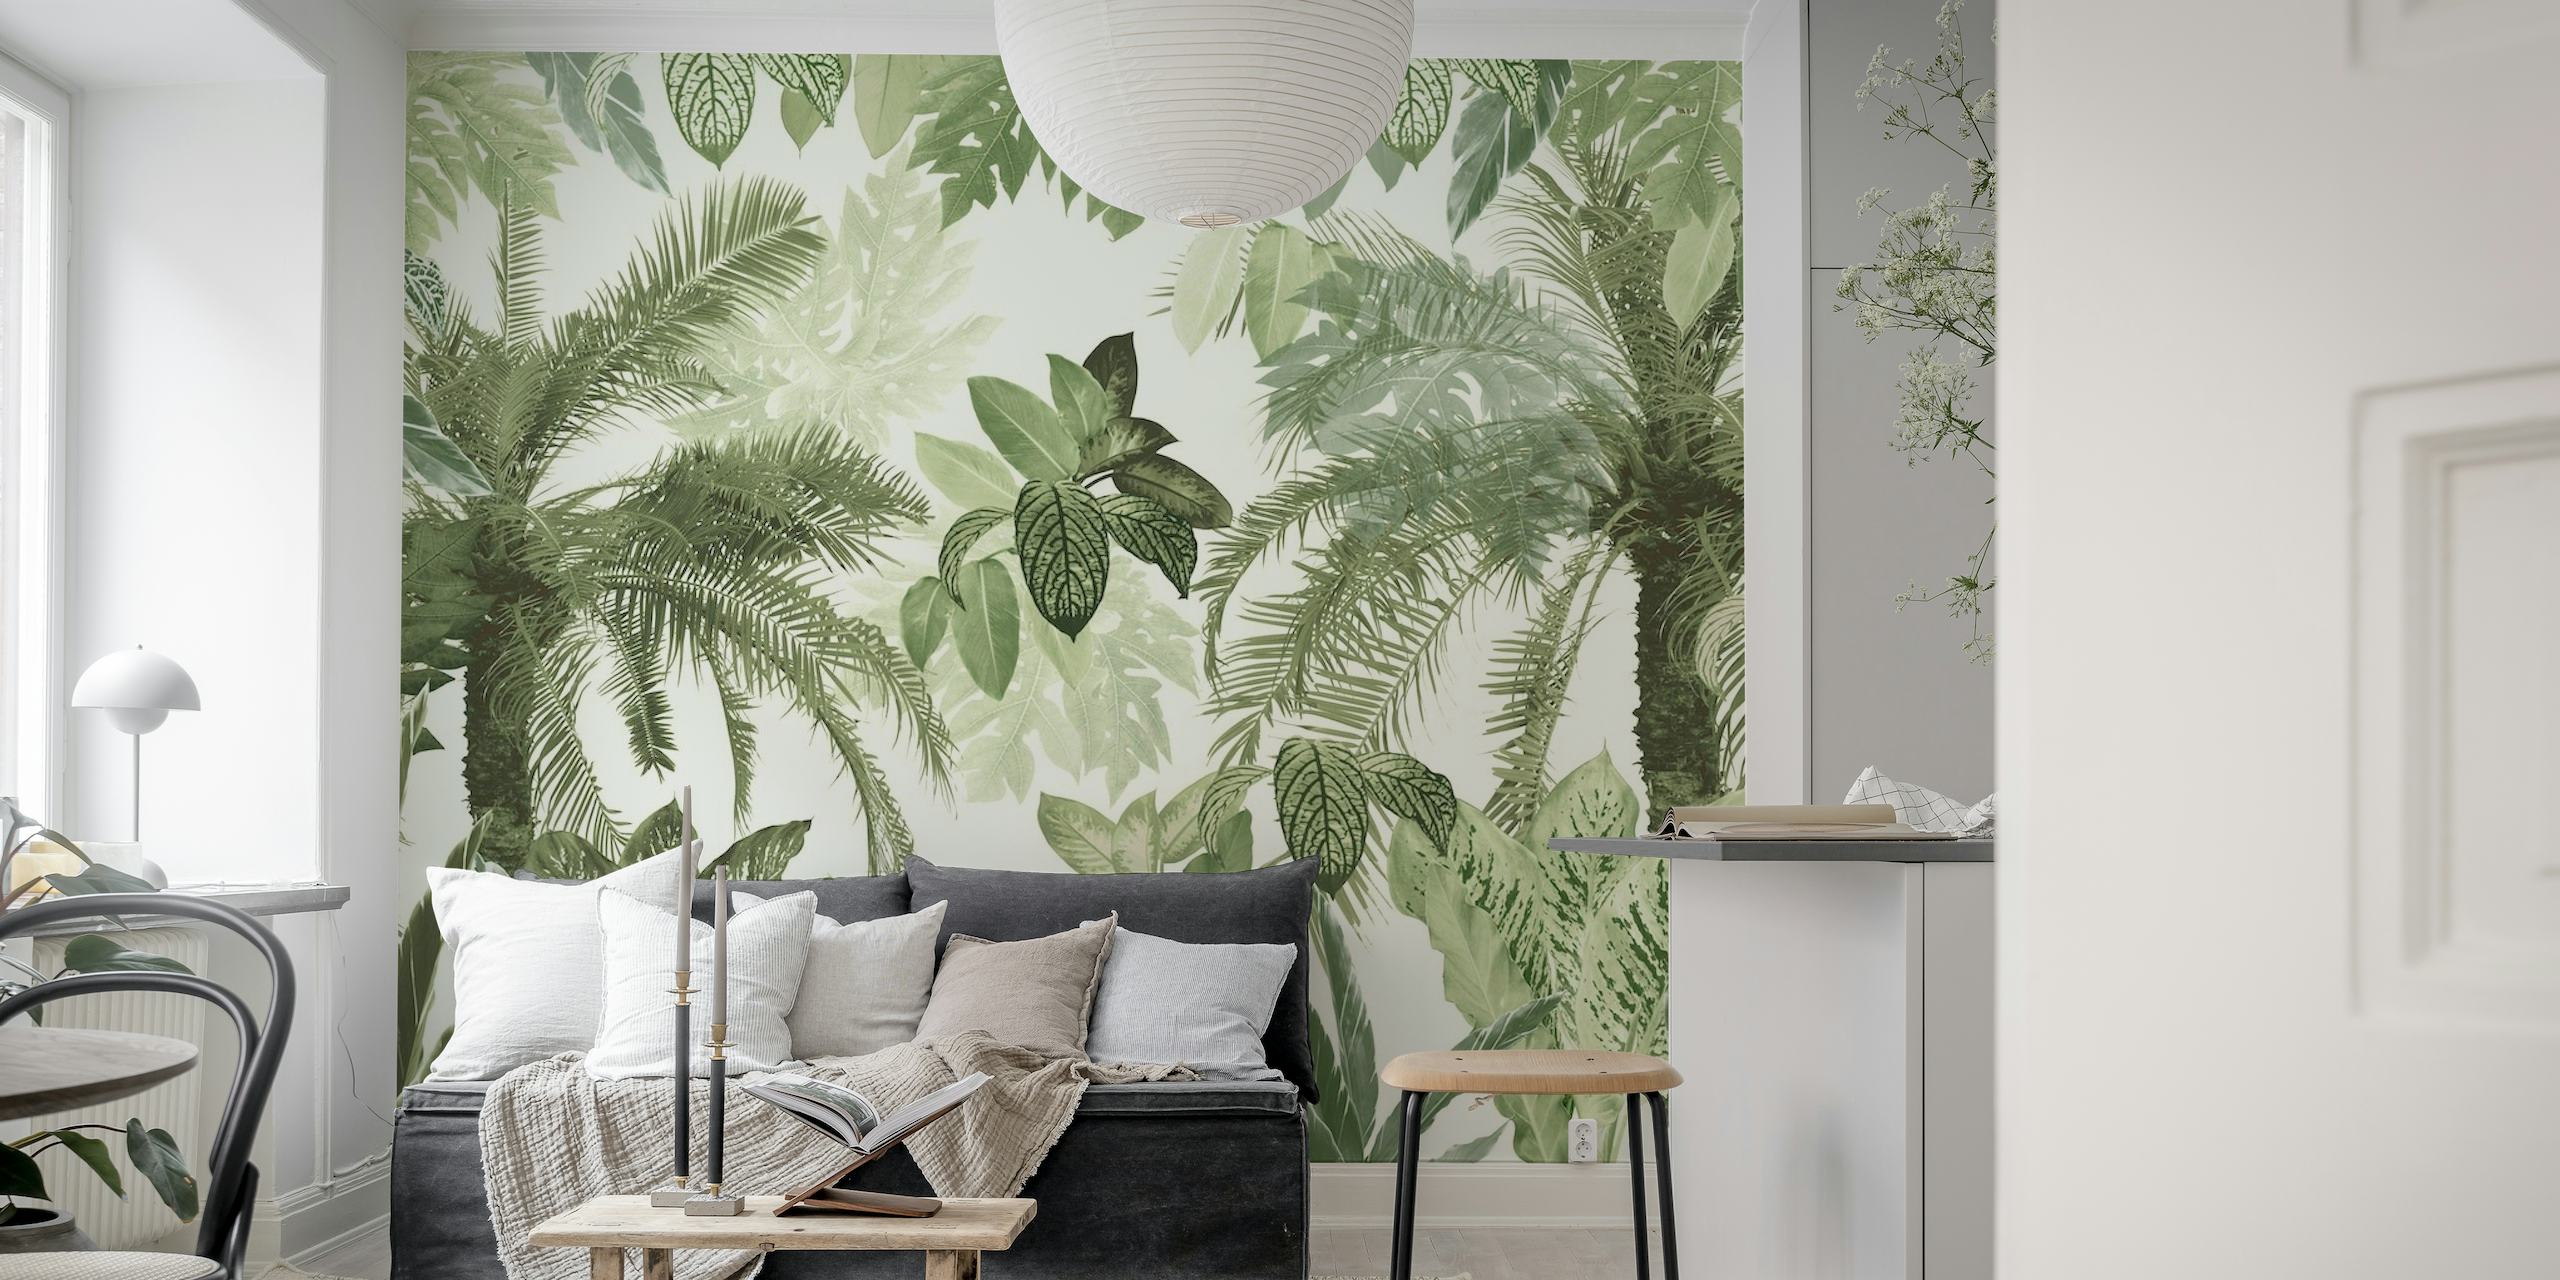 Una sofisticata decorazione murale con foglie della giungla tropicale che mostra una varietà di foglie verdi con un tocco vintage